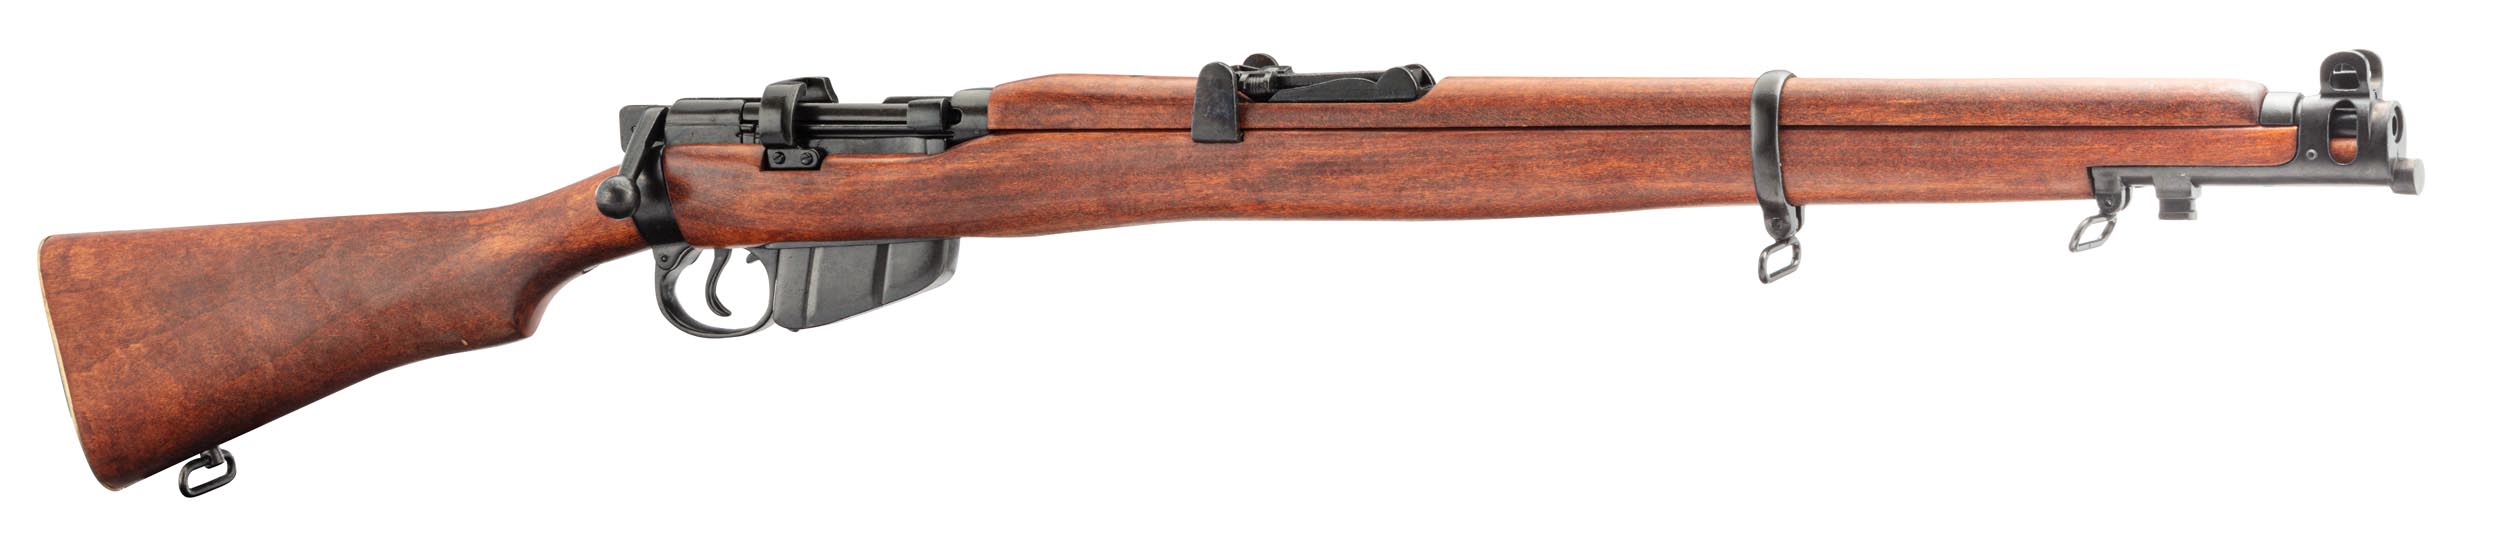 Lee-Enfield Rifle SMLE Denix